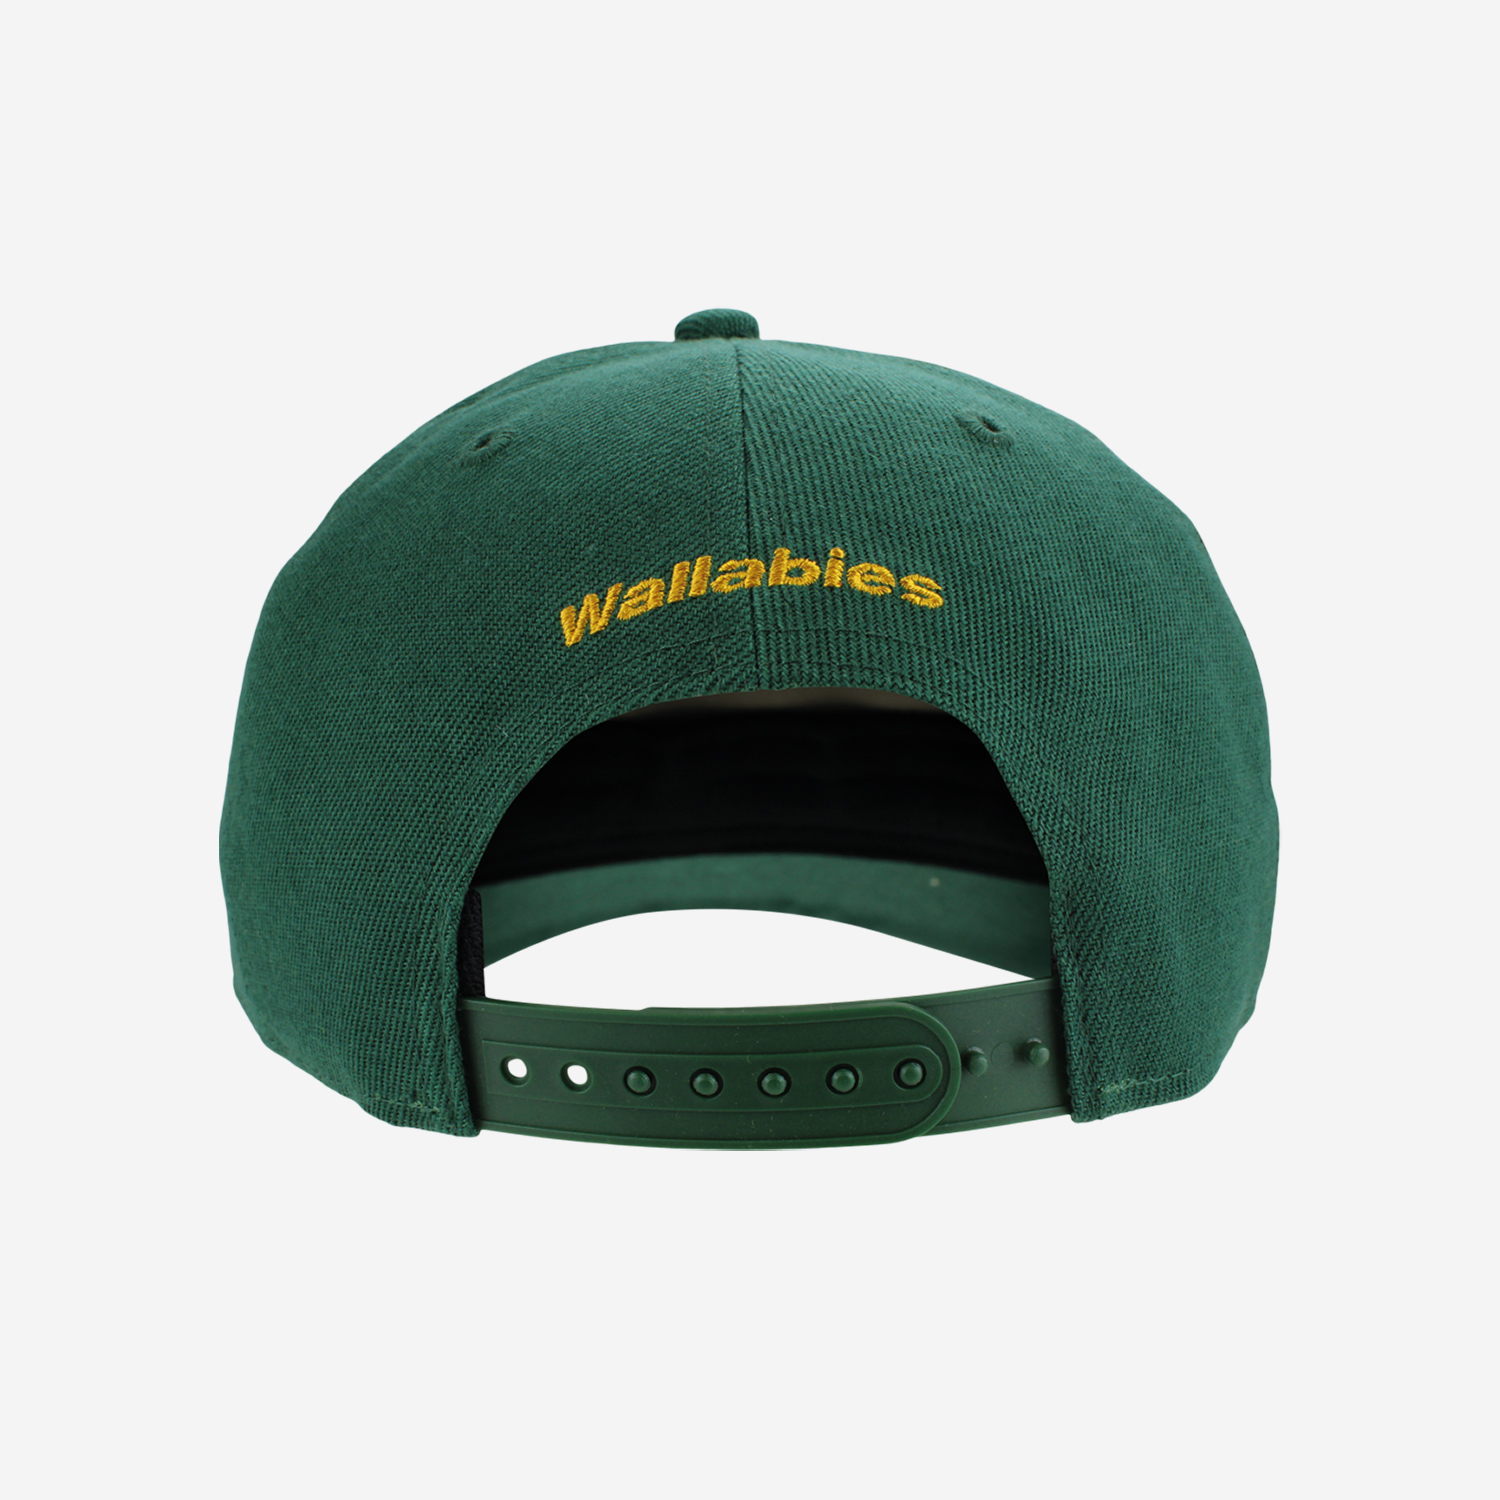 Wallabies Green Adjustable Cap